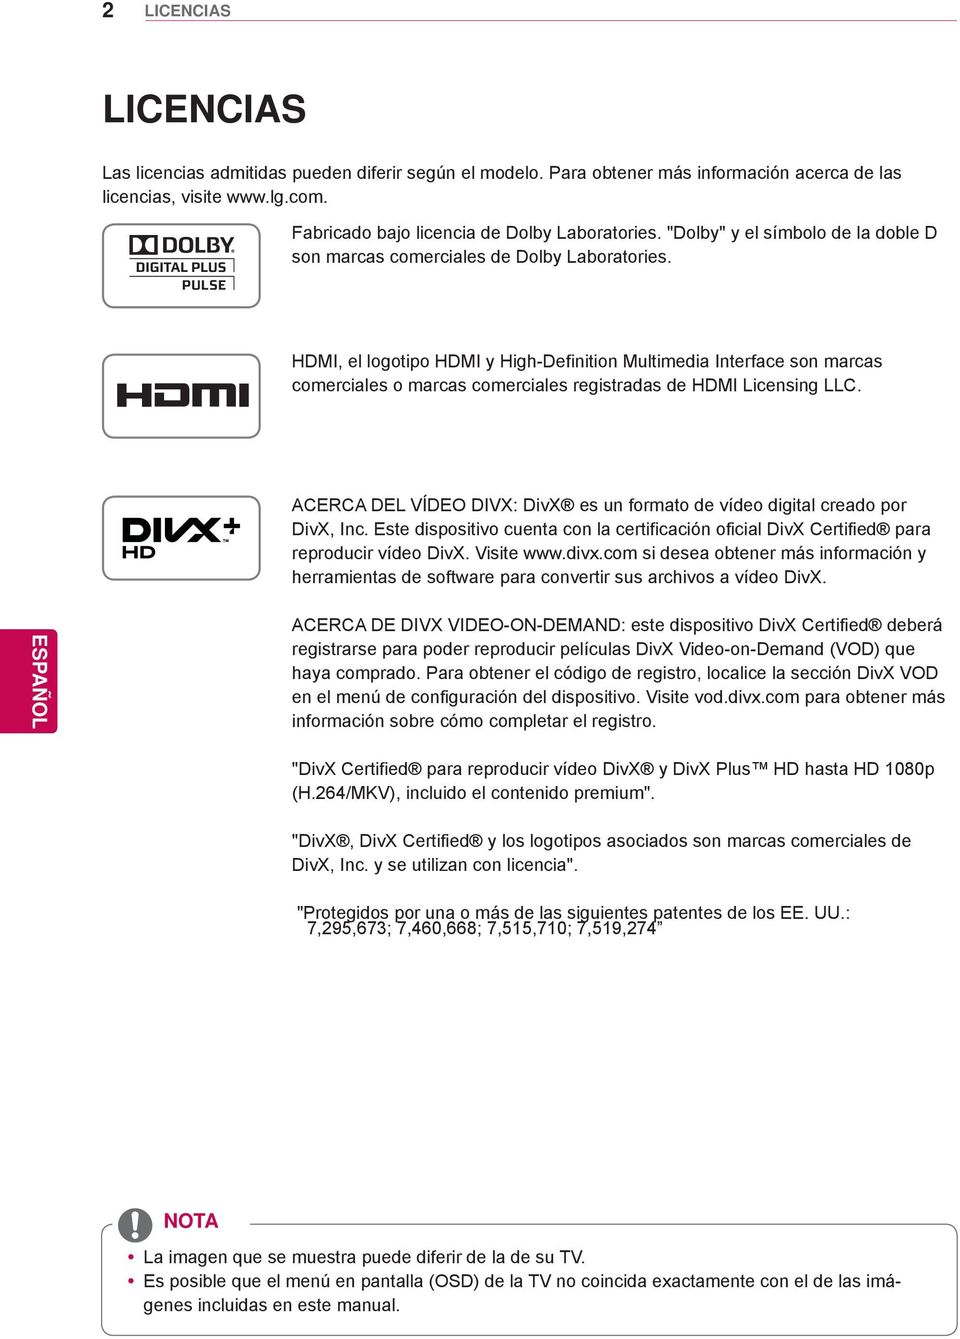 HDMI, el logotipo HDMI y High-Definition Multimedia Interface son marcas comerciales o marcas comerciales registradas de HDMI Licensing LLC.